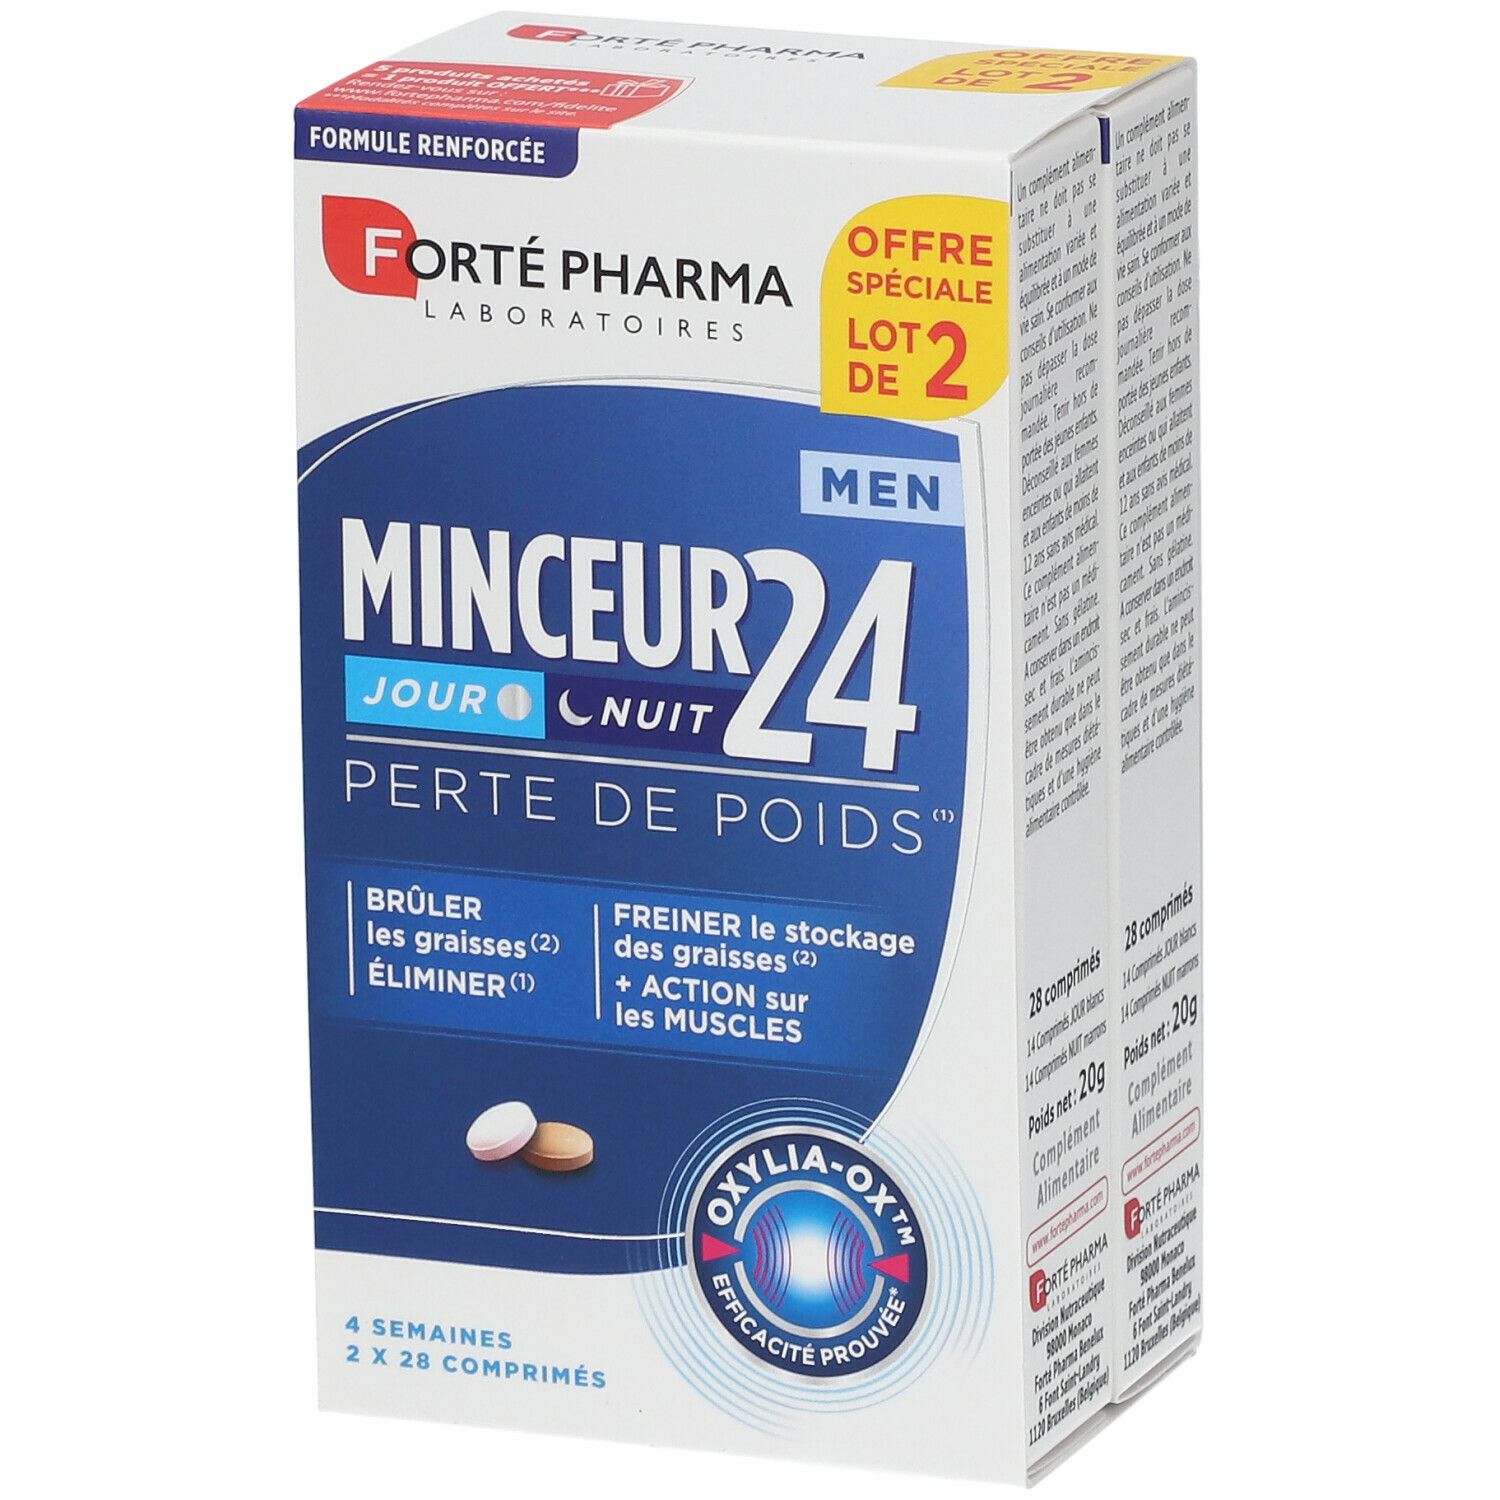 Forté Pharma Minceur 24 Men Jour & Nuit - shop-pharmacie.fr